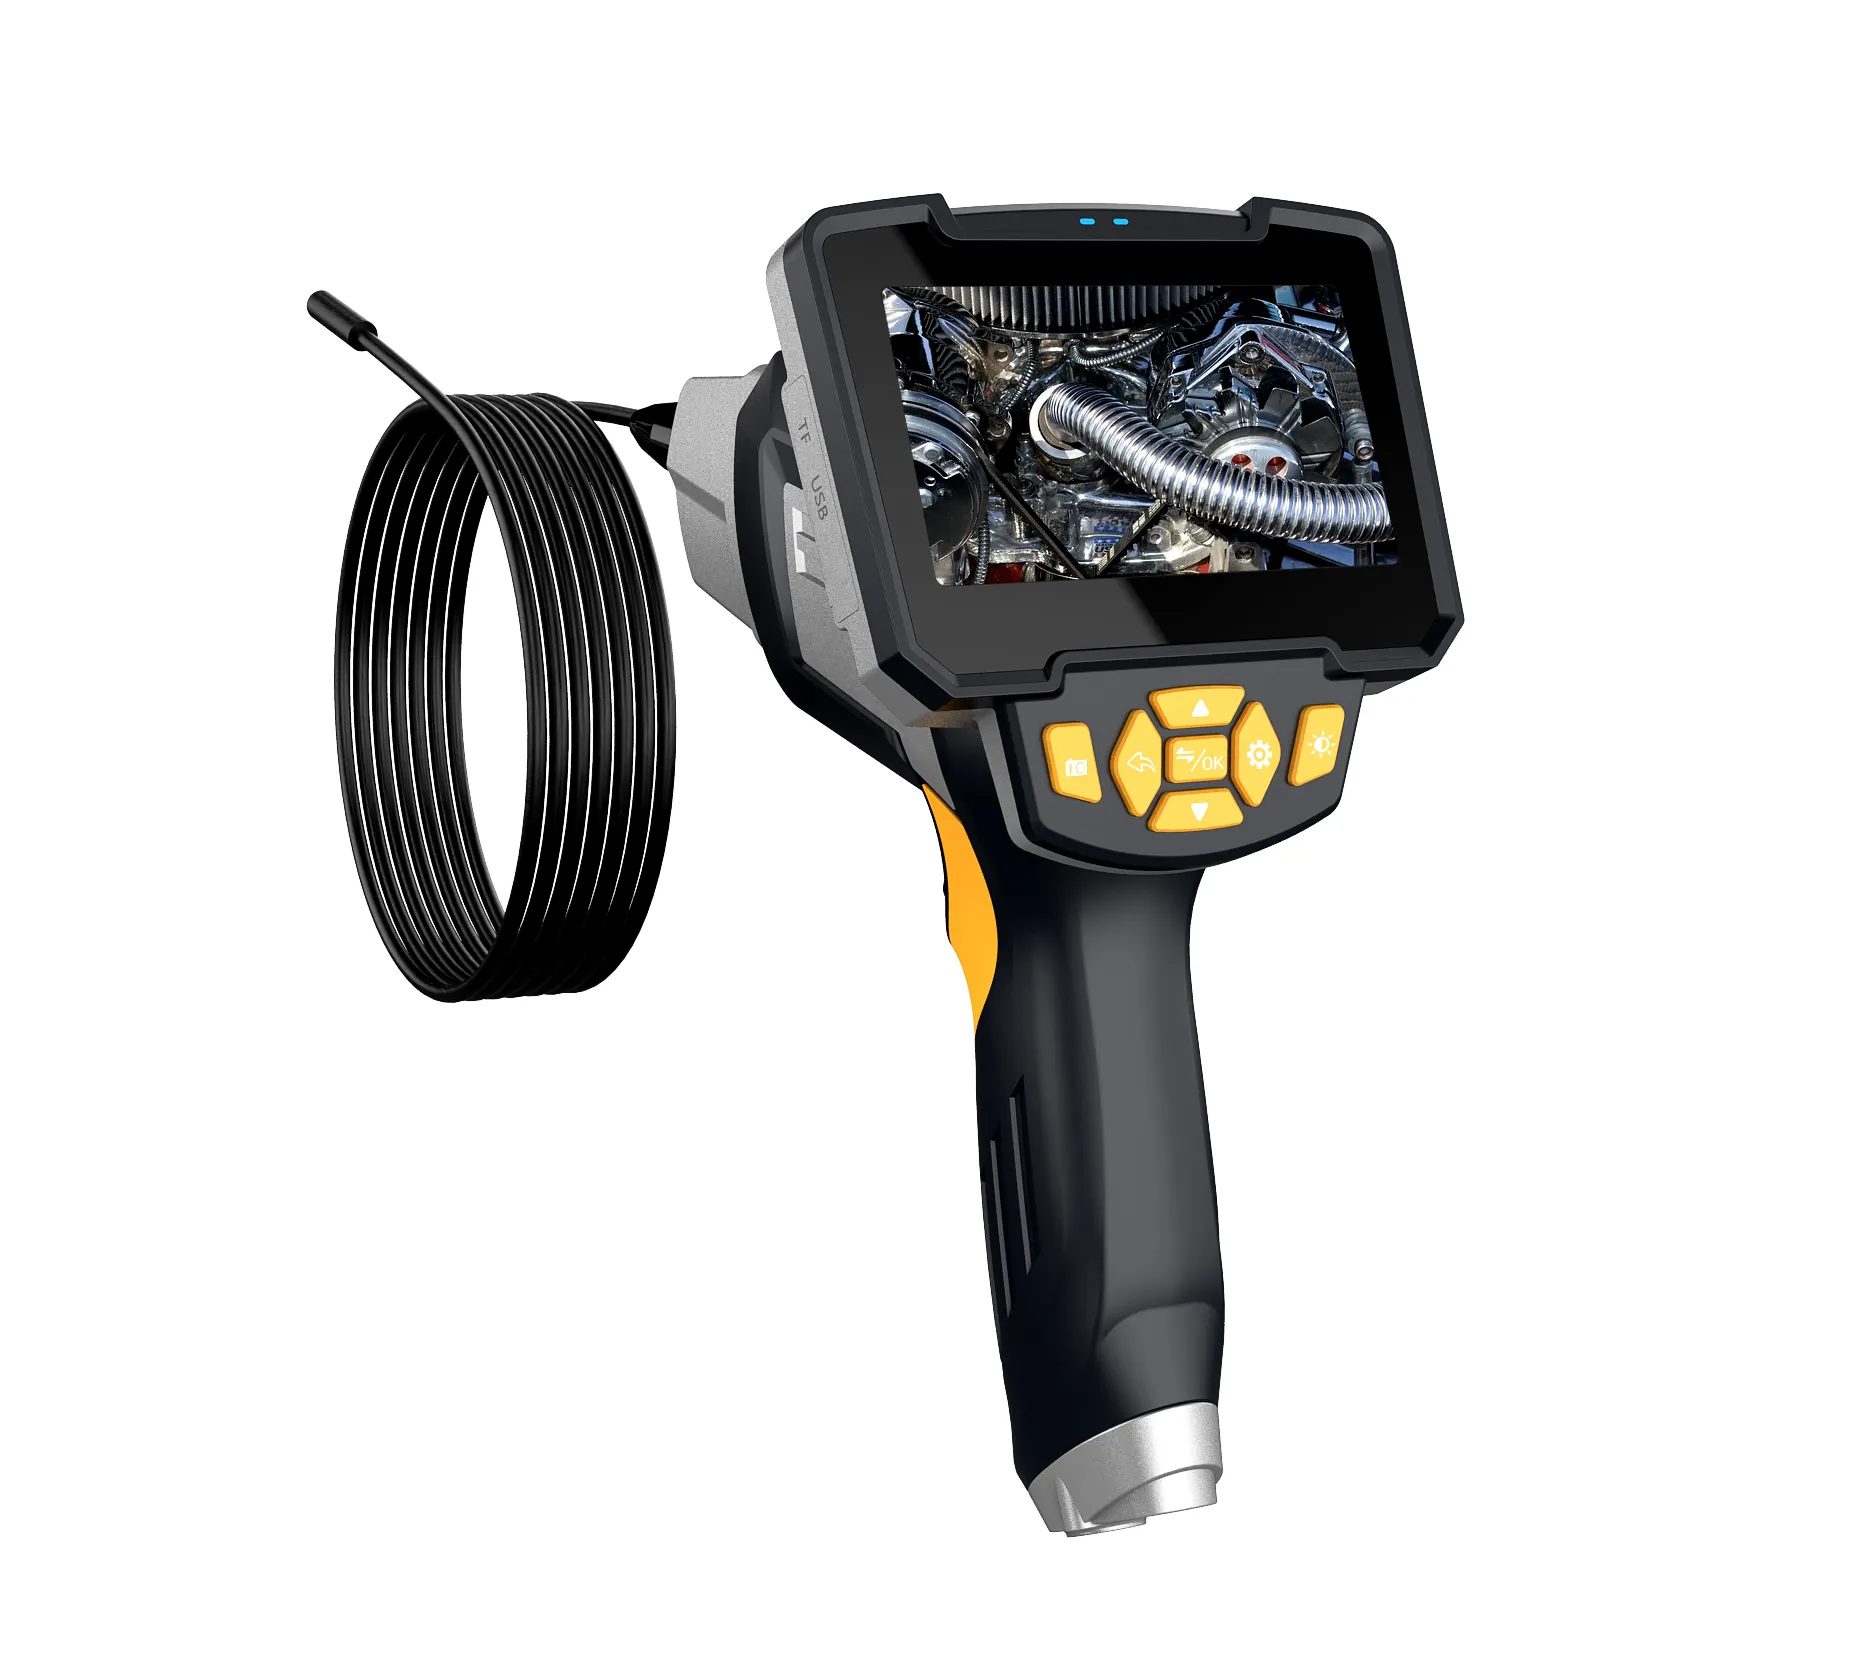 Handheld Industriële Endoscoop 4.3Inch Lcd-Scherm Digitale Industriële Endoscoop Draagbare Borescope Videoscoop Inspectie Camera